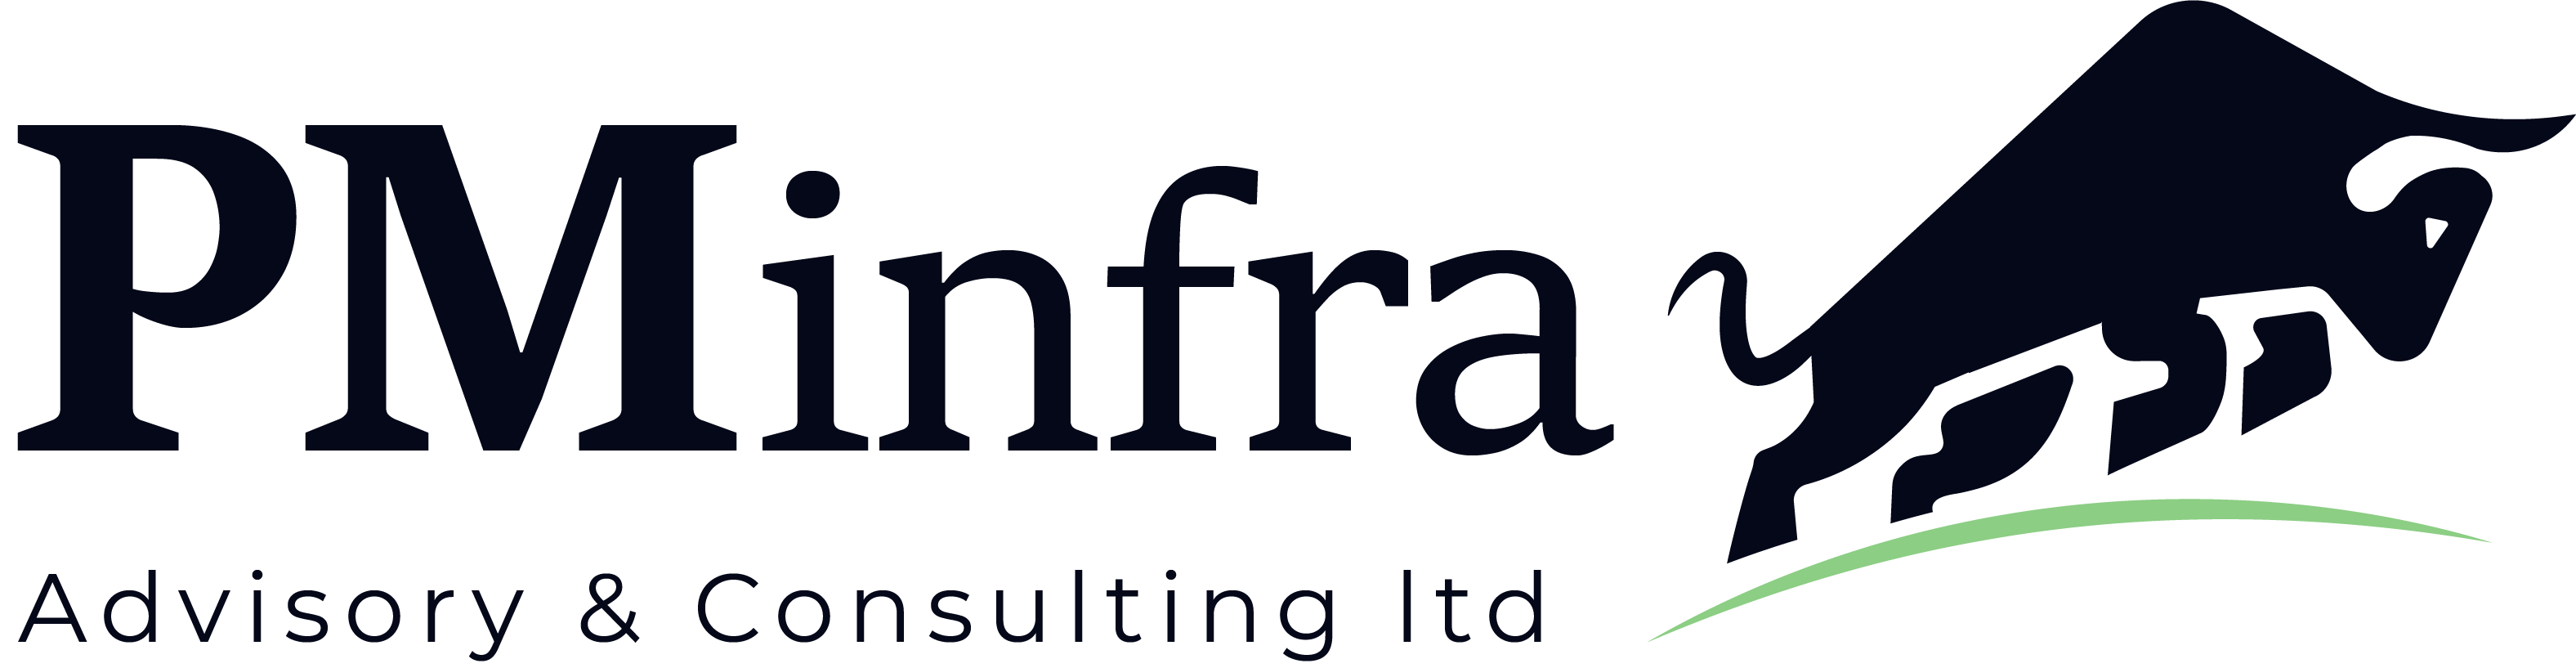 PMInfra Advisory & Consulting Ltd